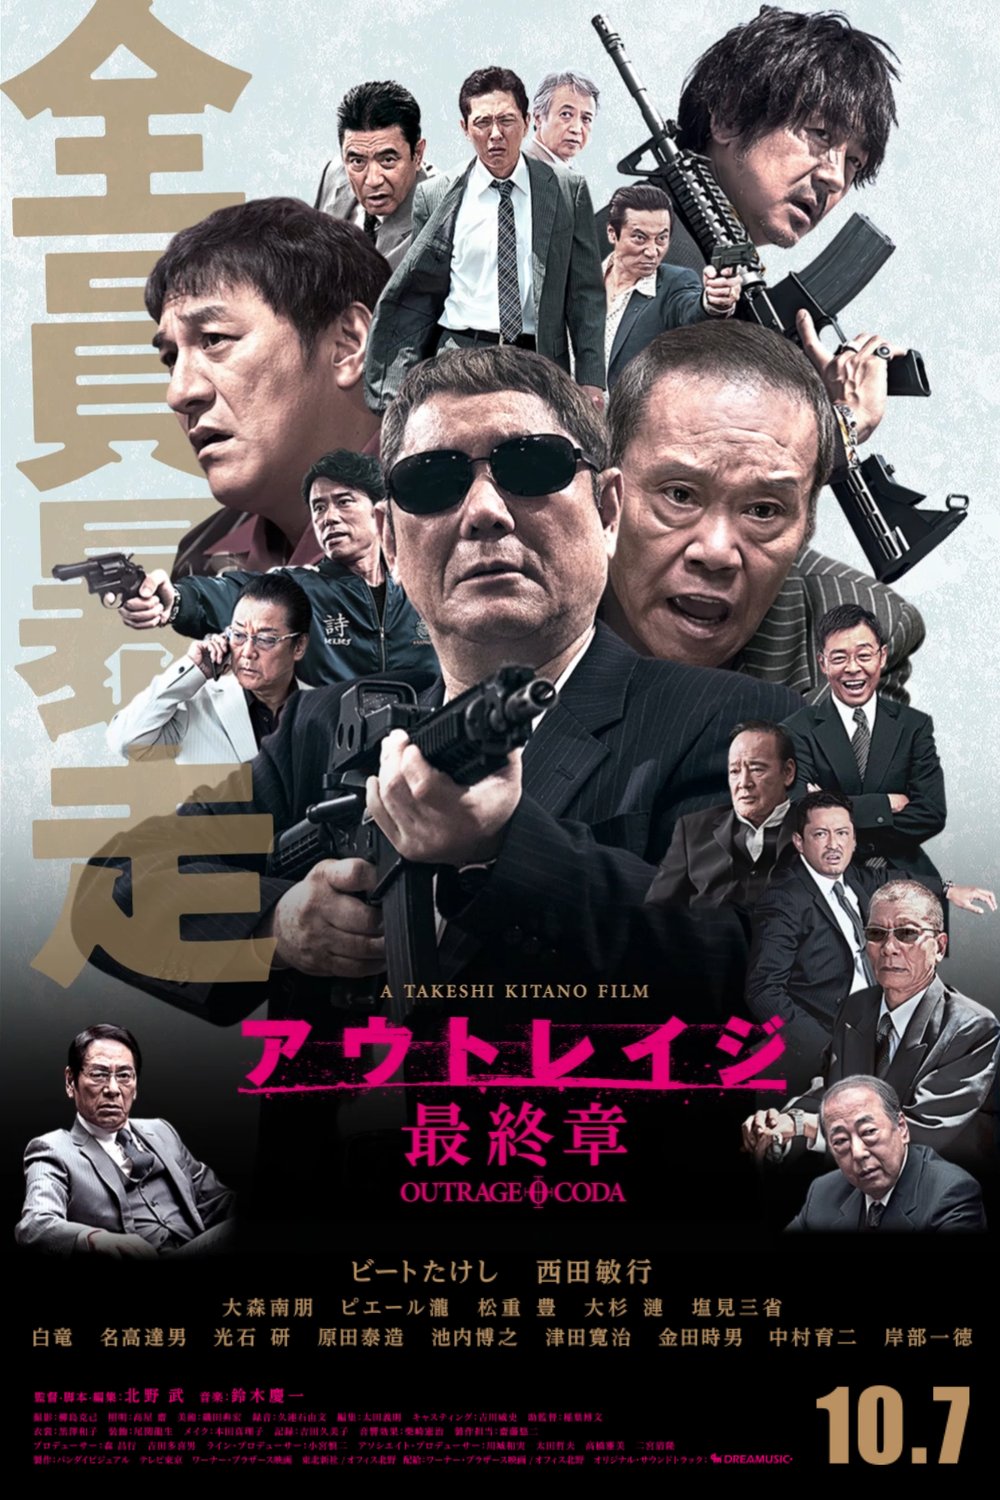 L'affiche originale du film Outrage Coda en japonais